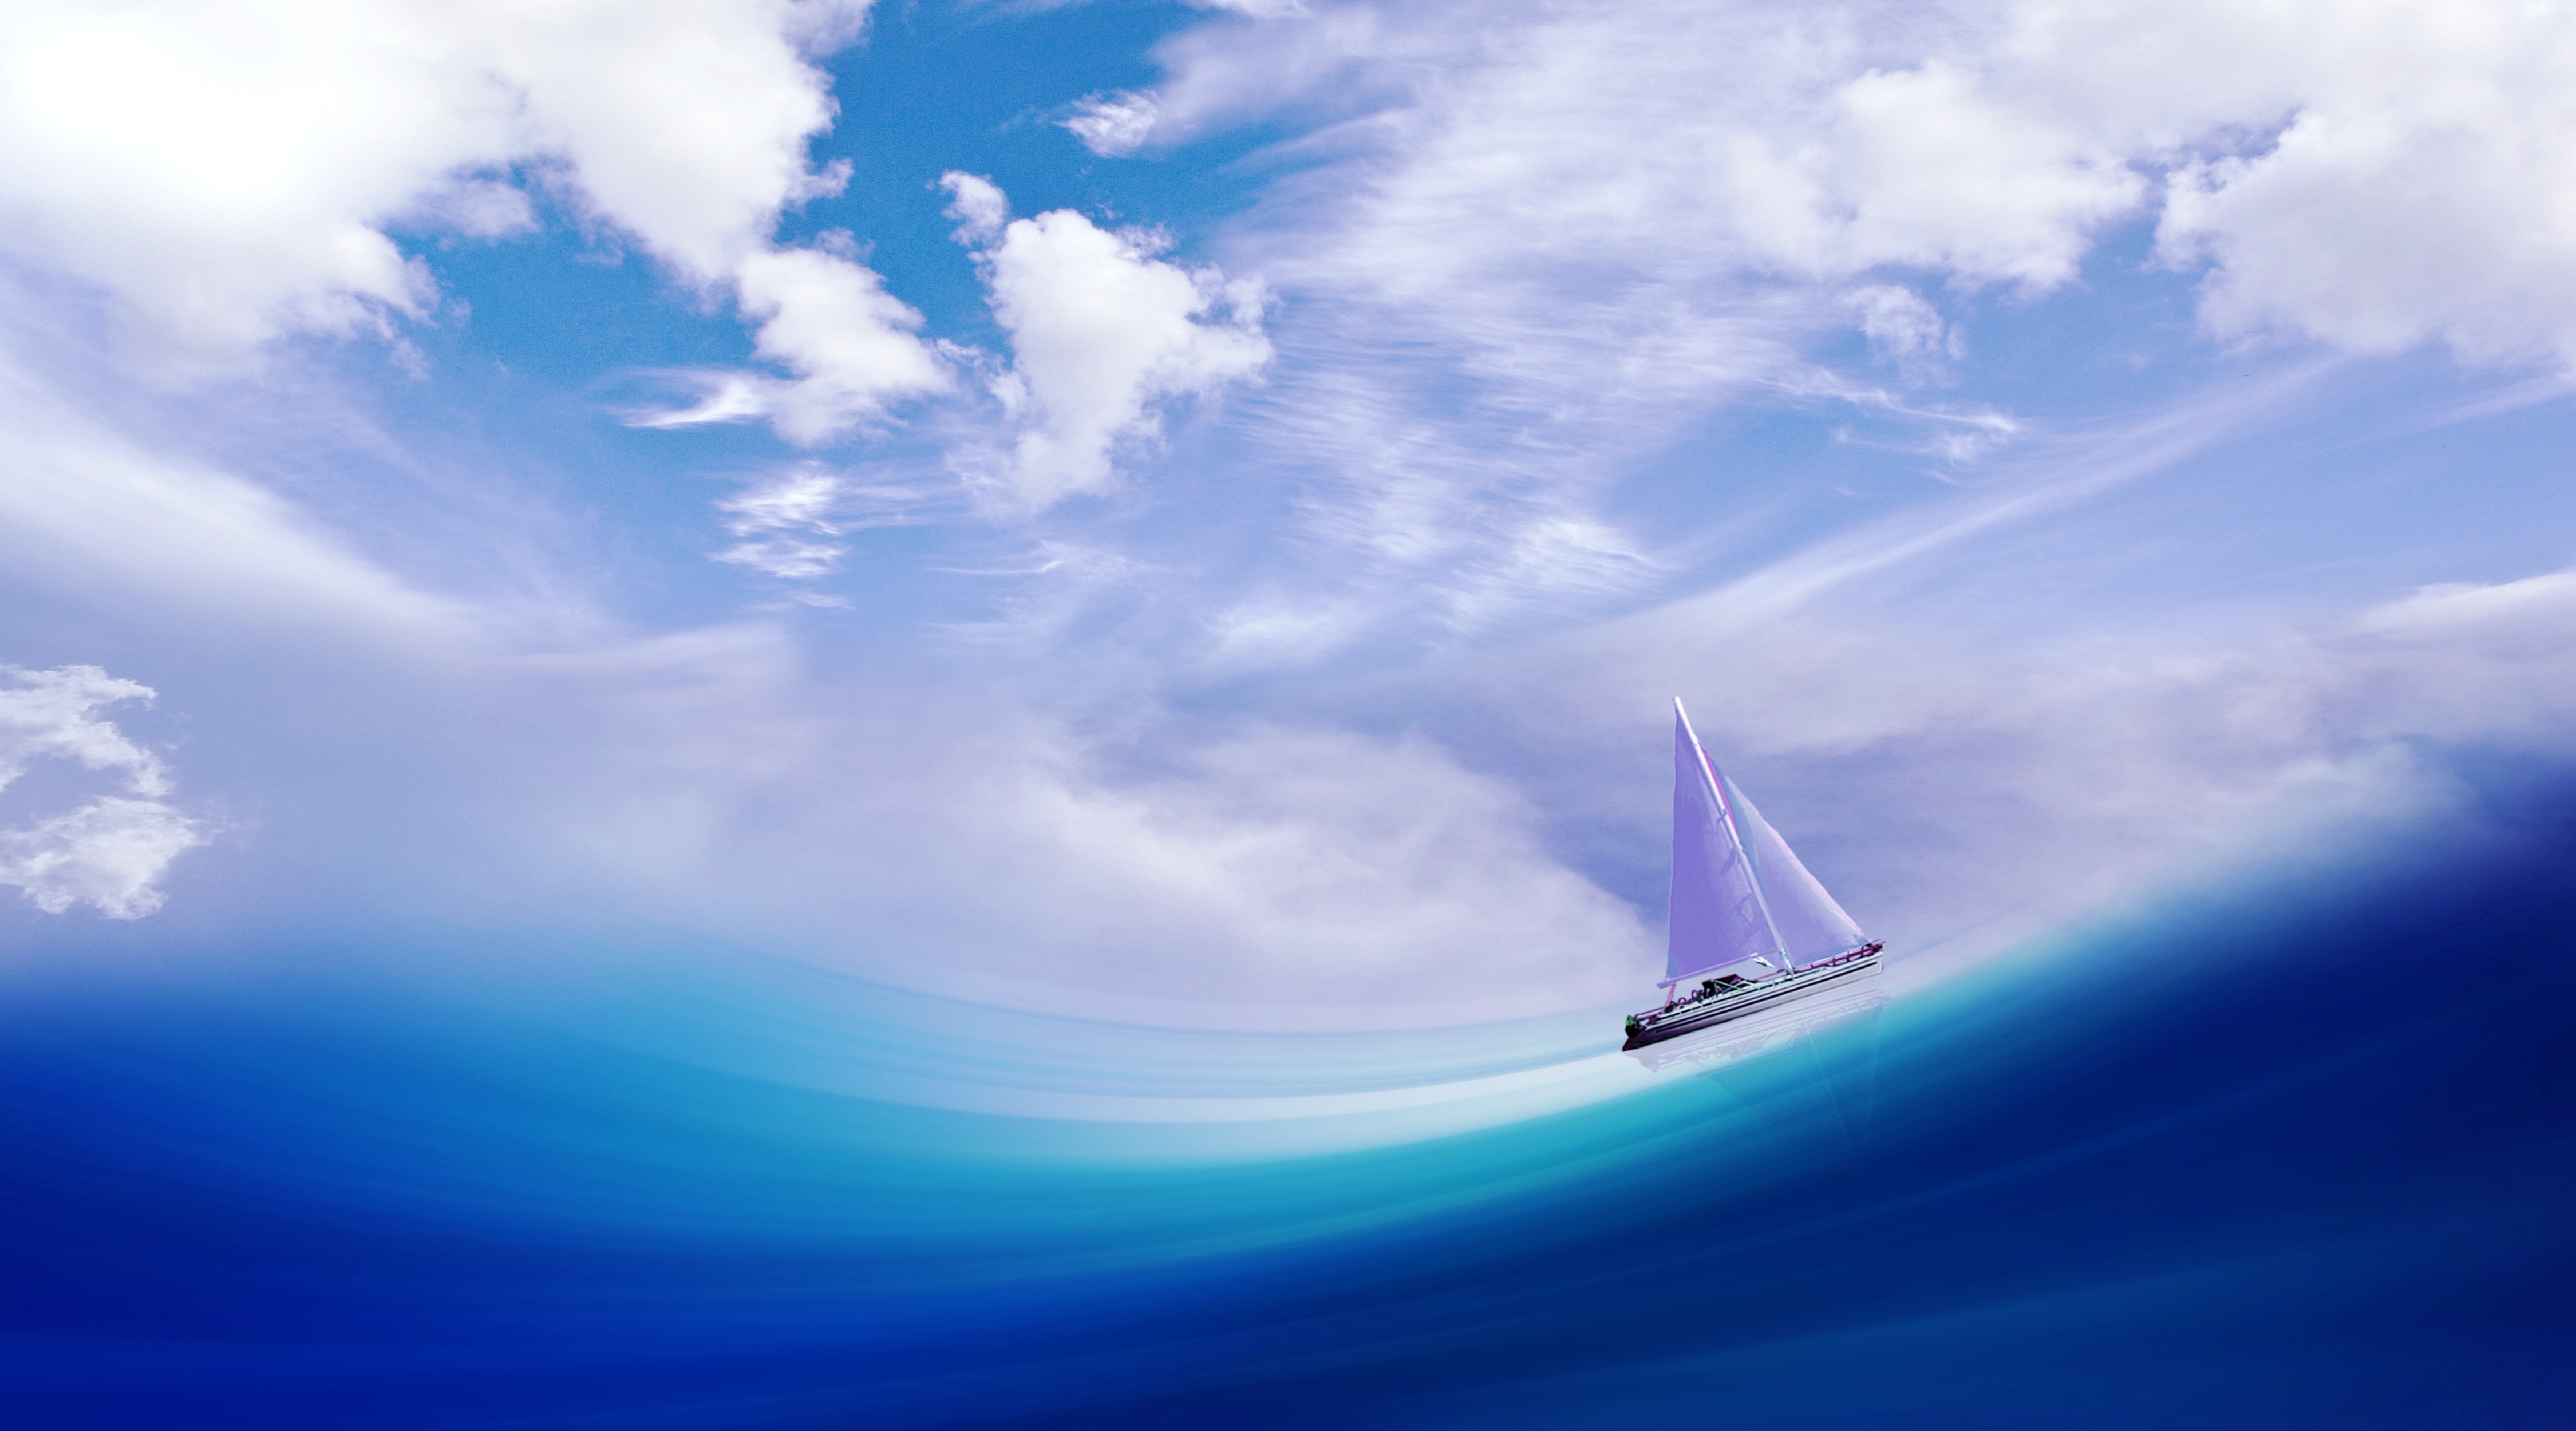 blue ocean wave illustration